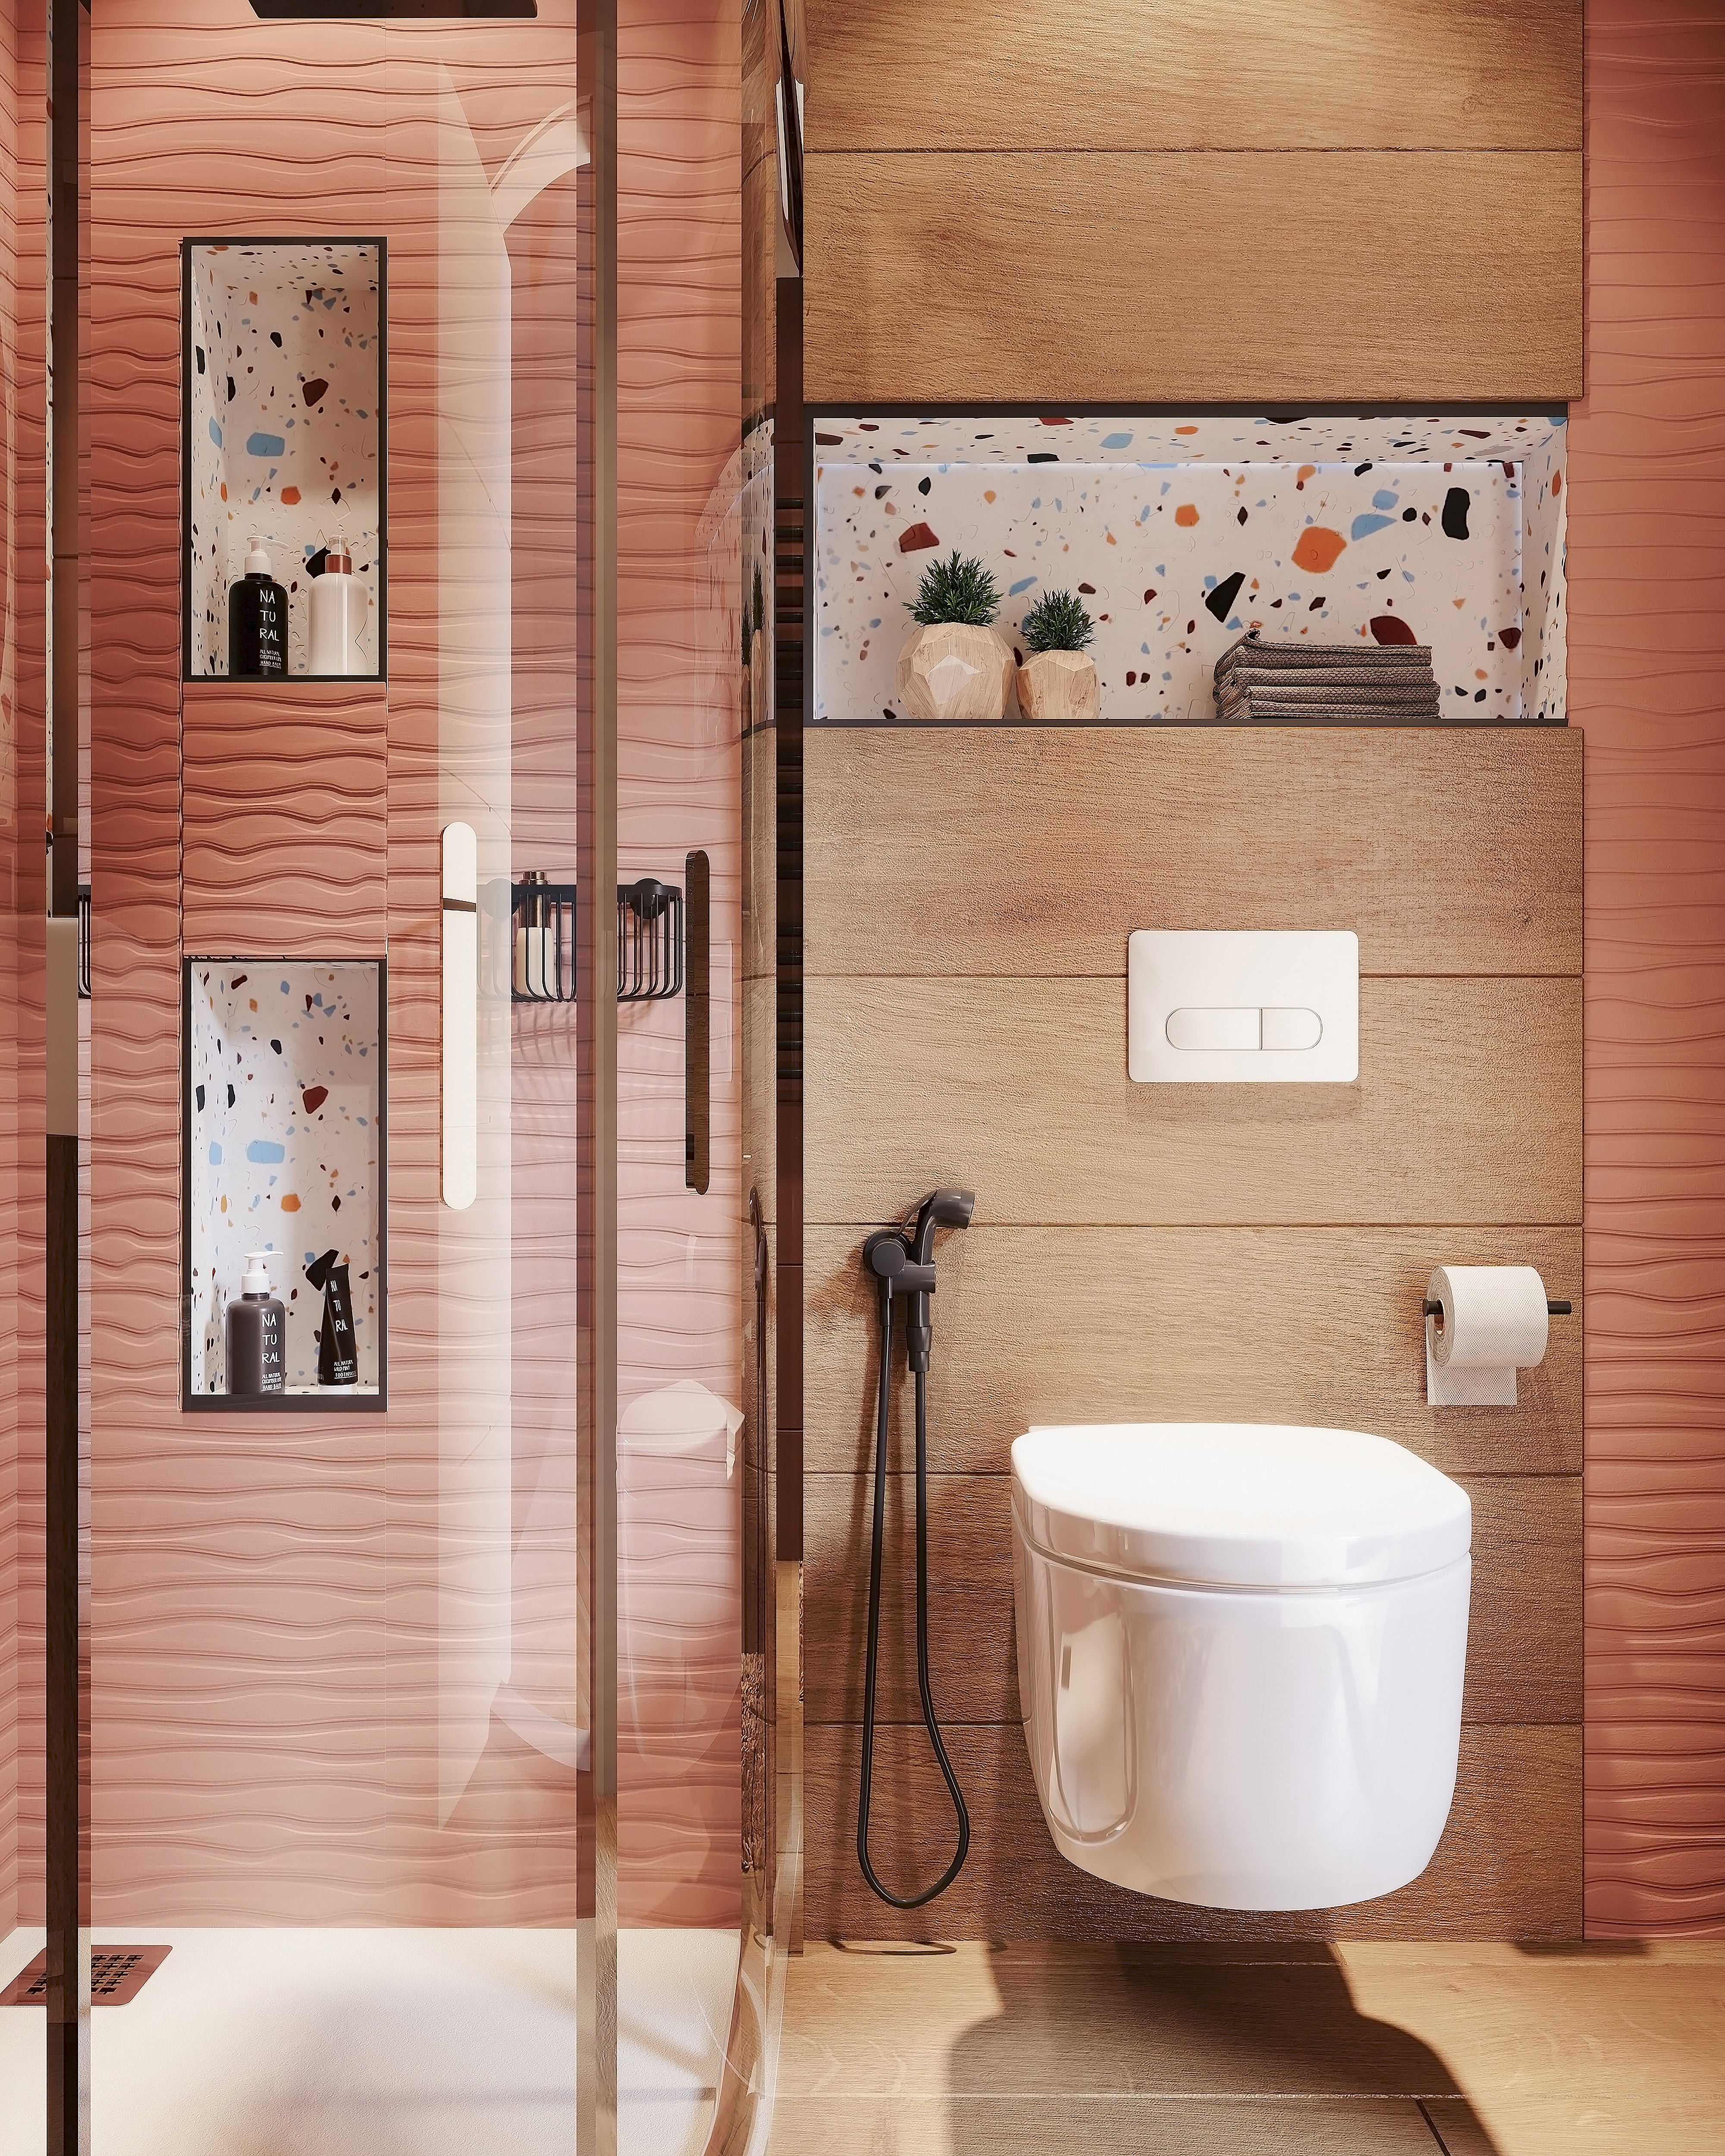 Hornacina pared ducha - Reforma de baños Sincro #baños #banos #reformas  #diseño #design #bathroom #barc…